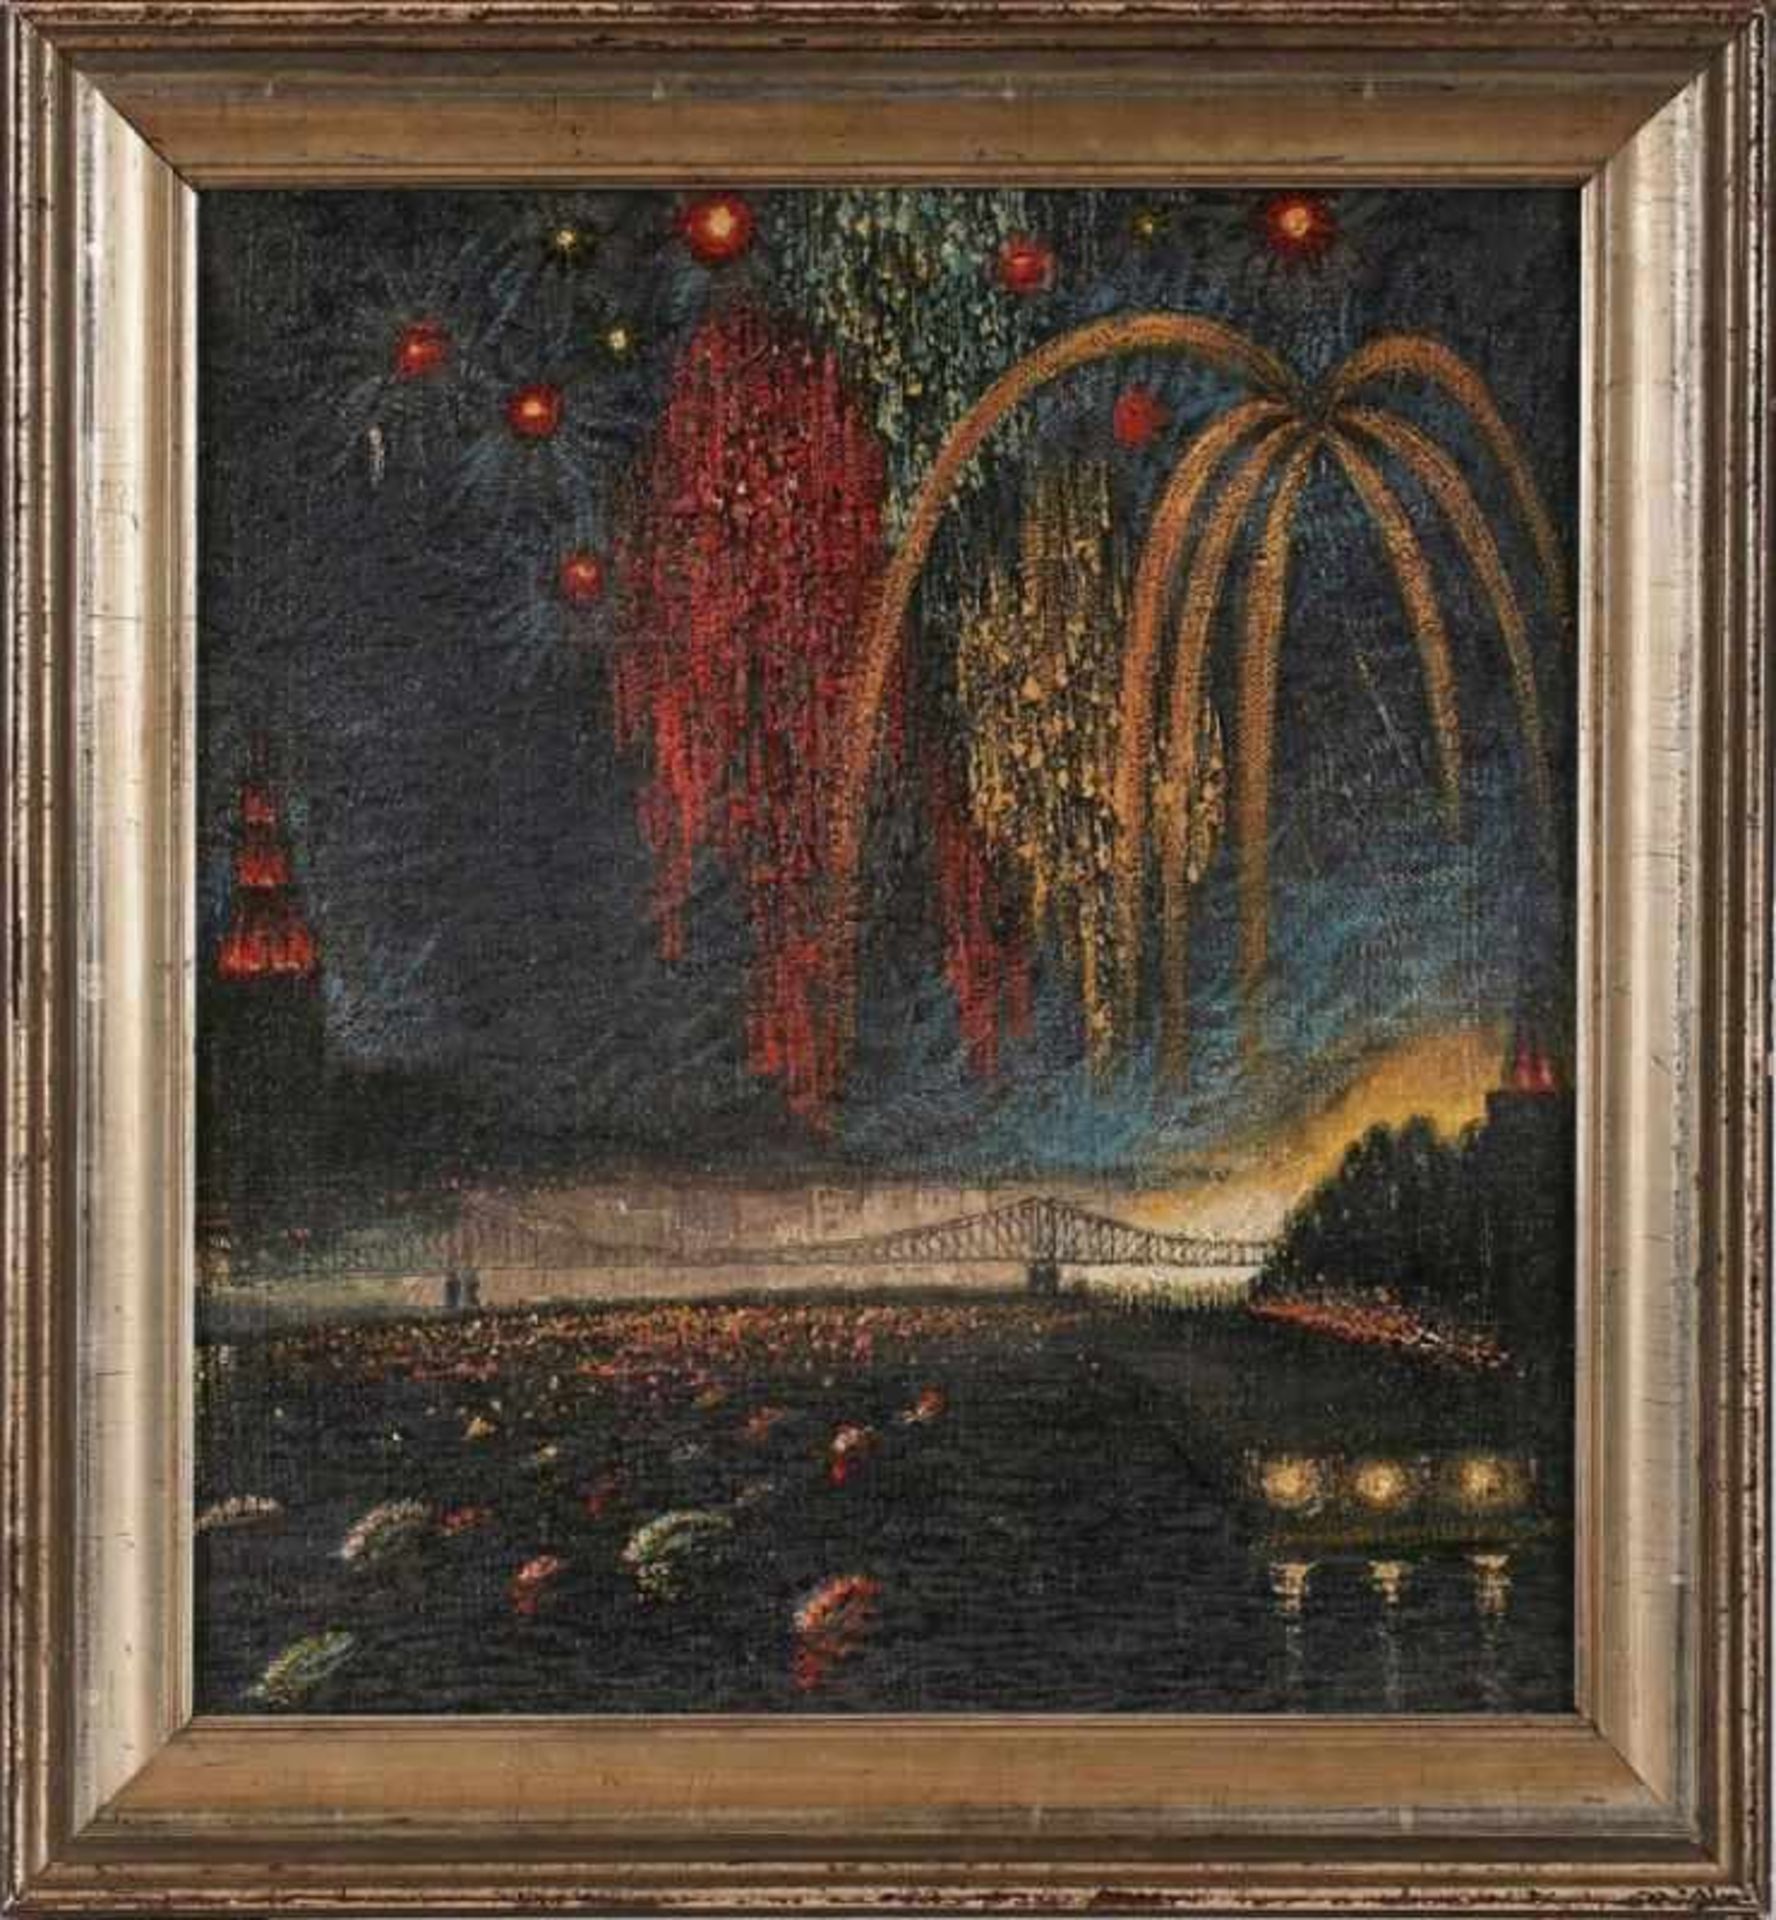 Gemälde Vedutenmaler um 1920 "Mainbeleuchtung / Feuerwerk" Öl/Lwd., 42 x 38,5 cm